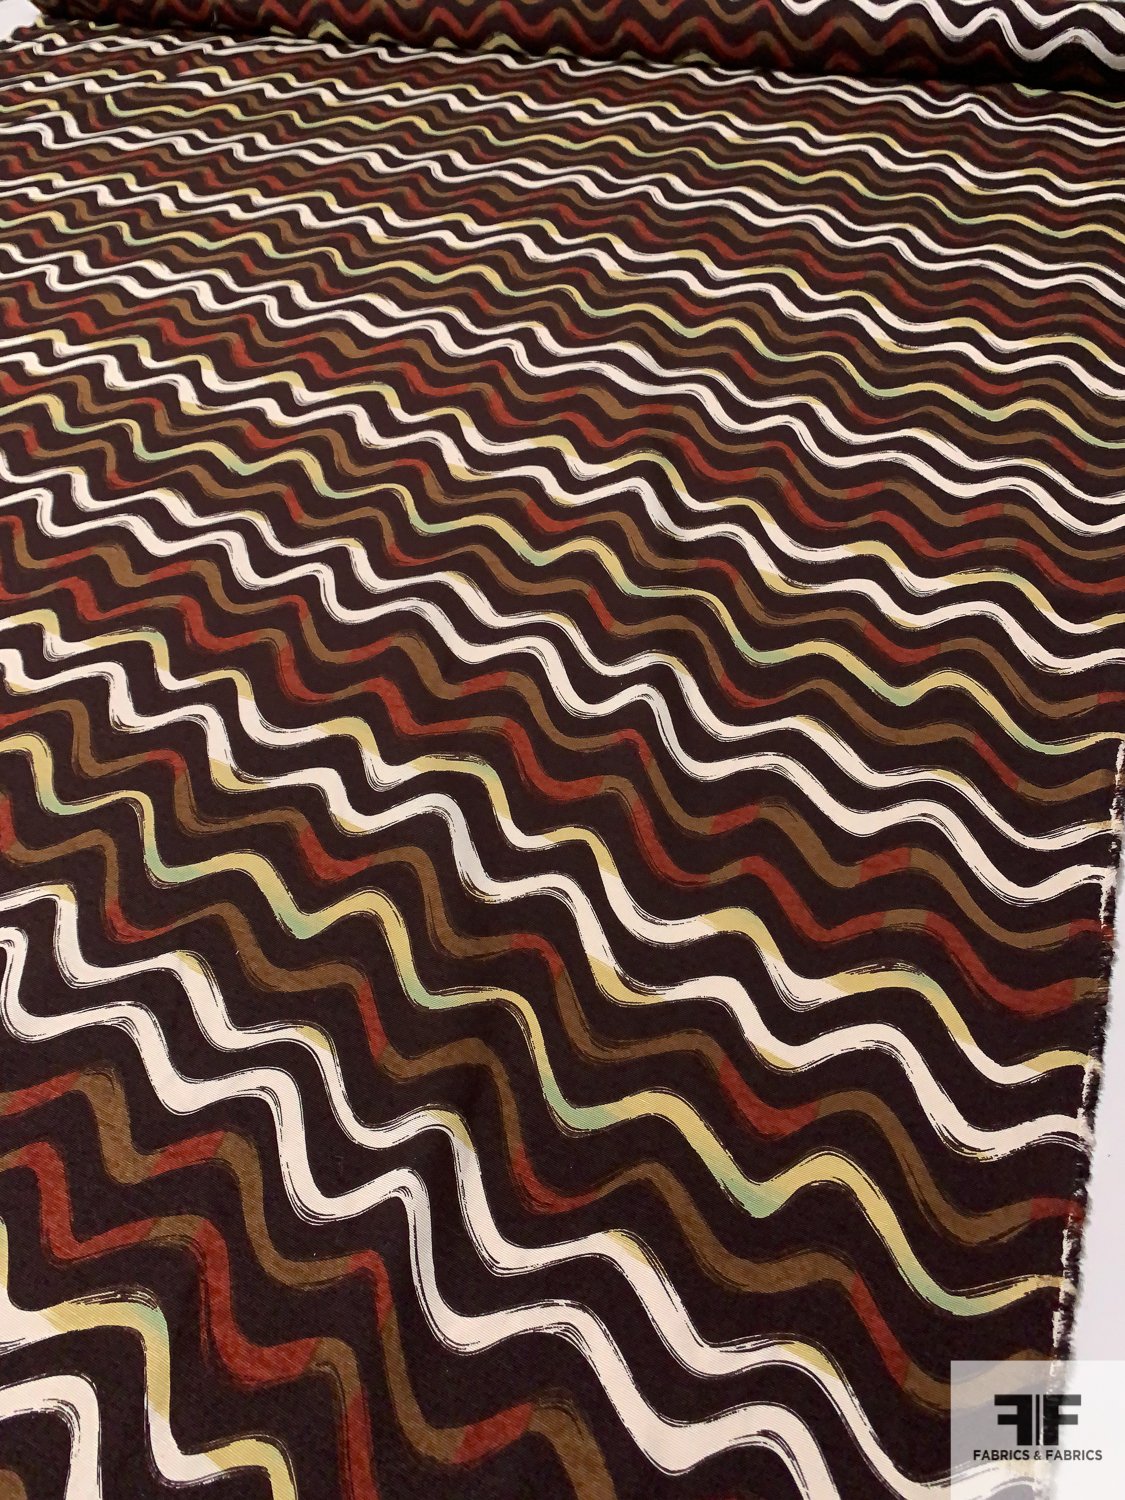 Wavy Stripes Printed Soft Silk Faille - Brown / Rust / Tan / Sage